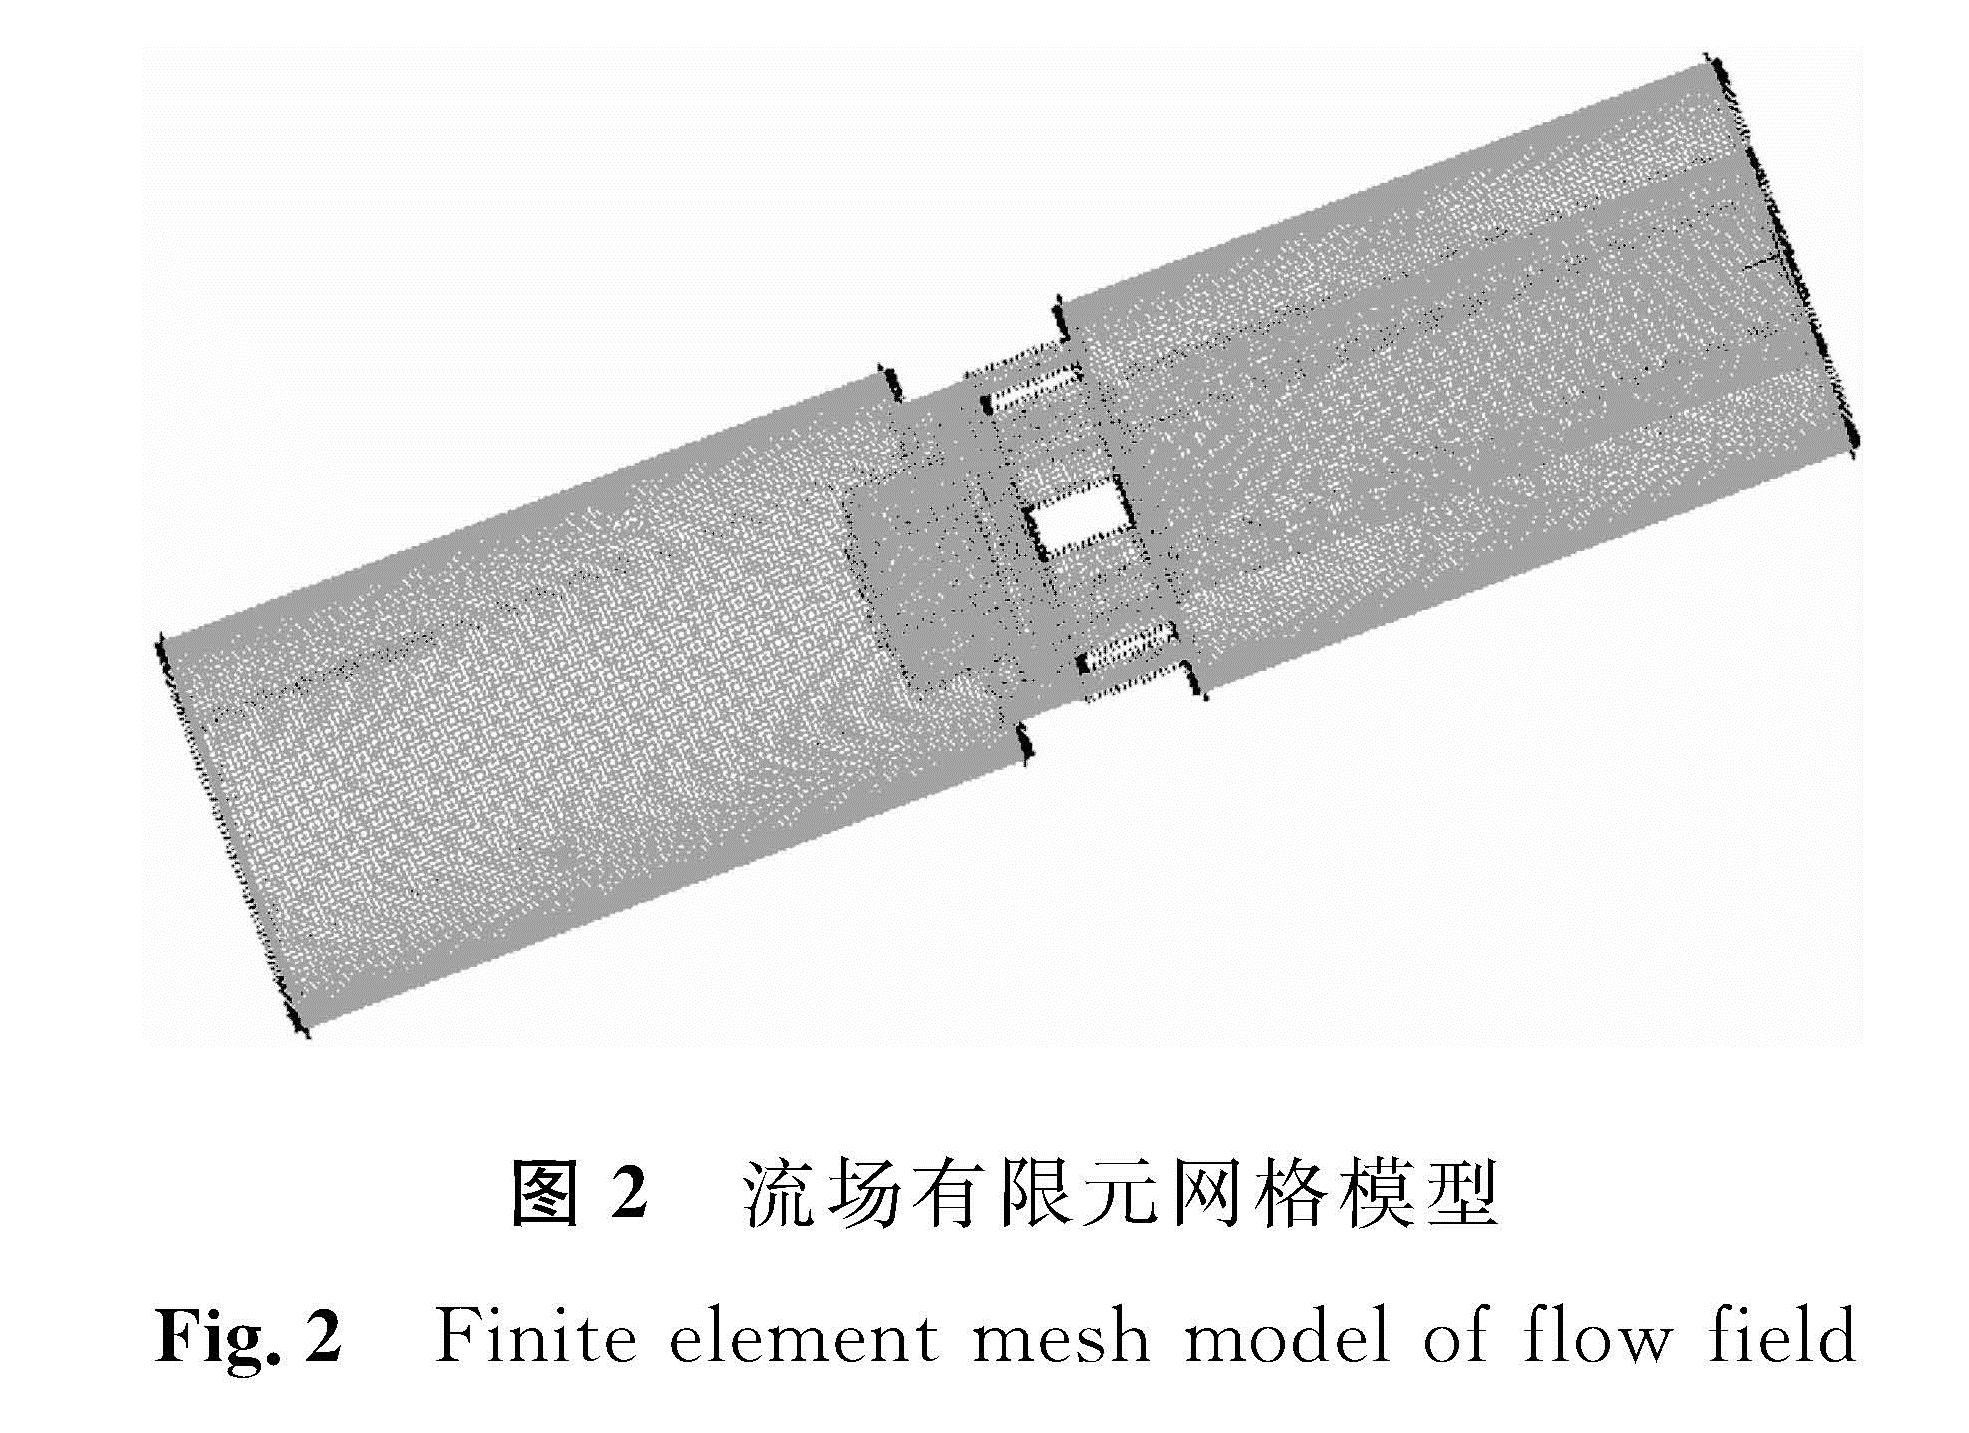 图2 流场有限元网格模型<br/>Fig.2 Finite element mesh model of flow field